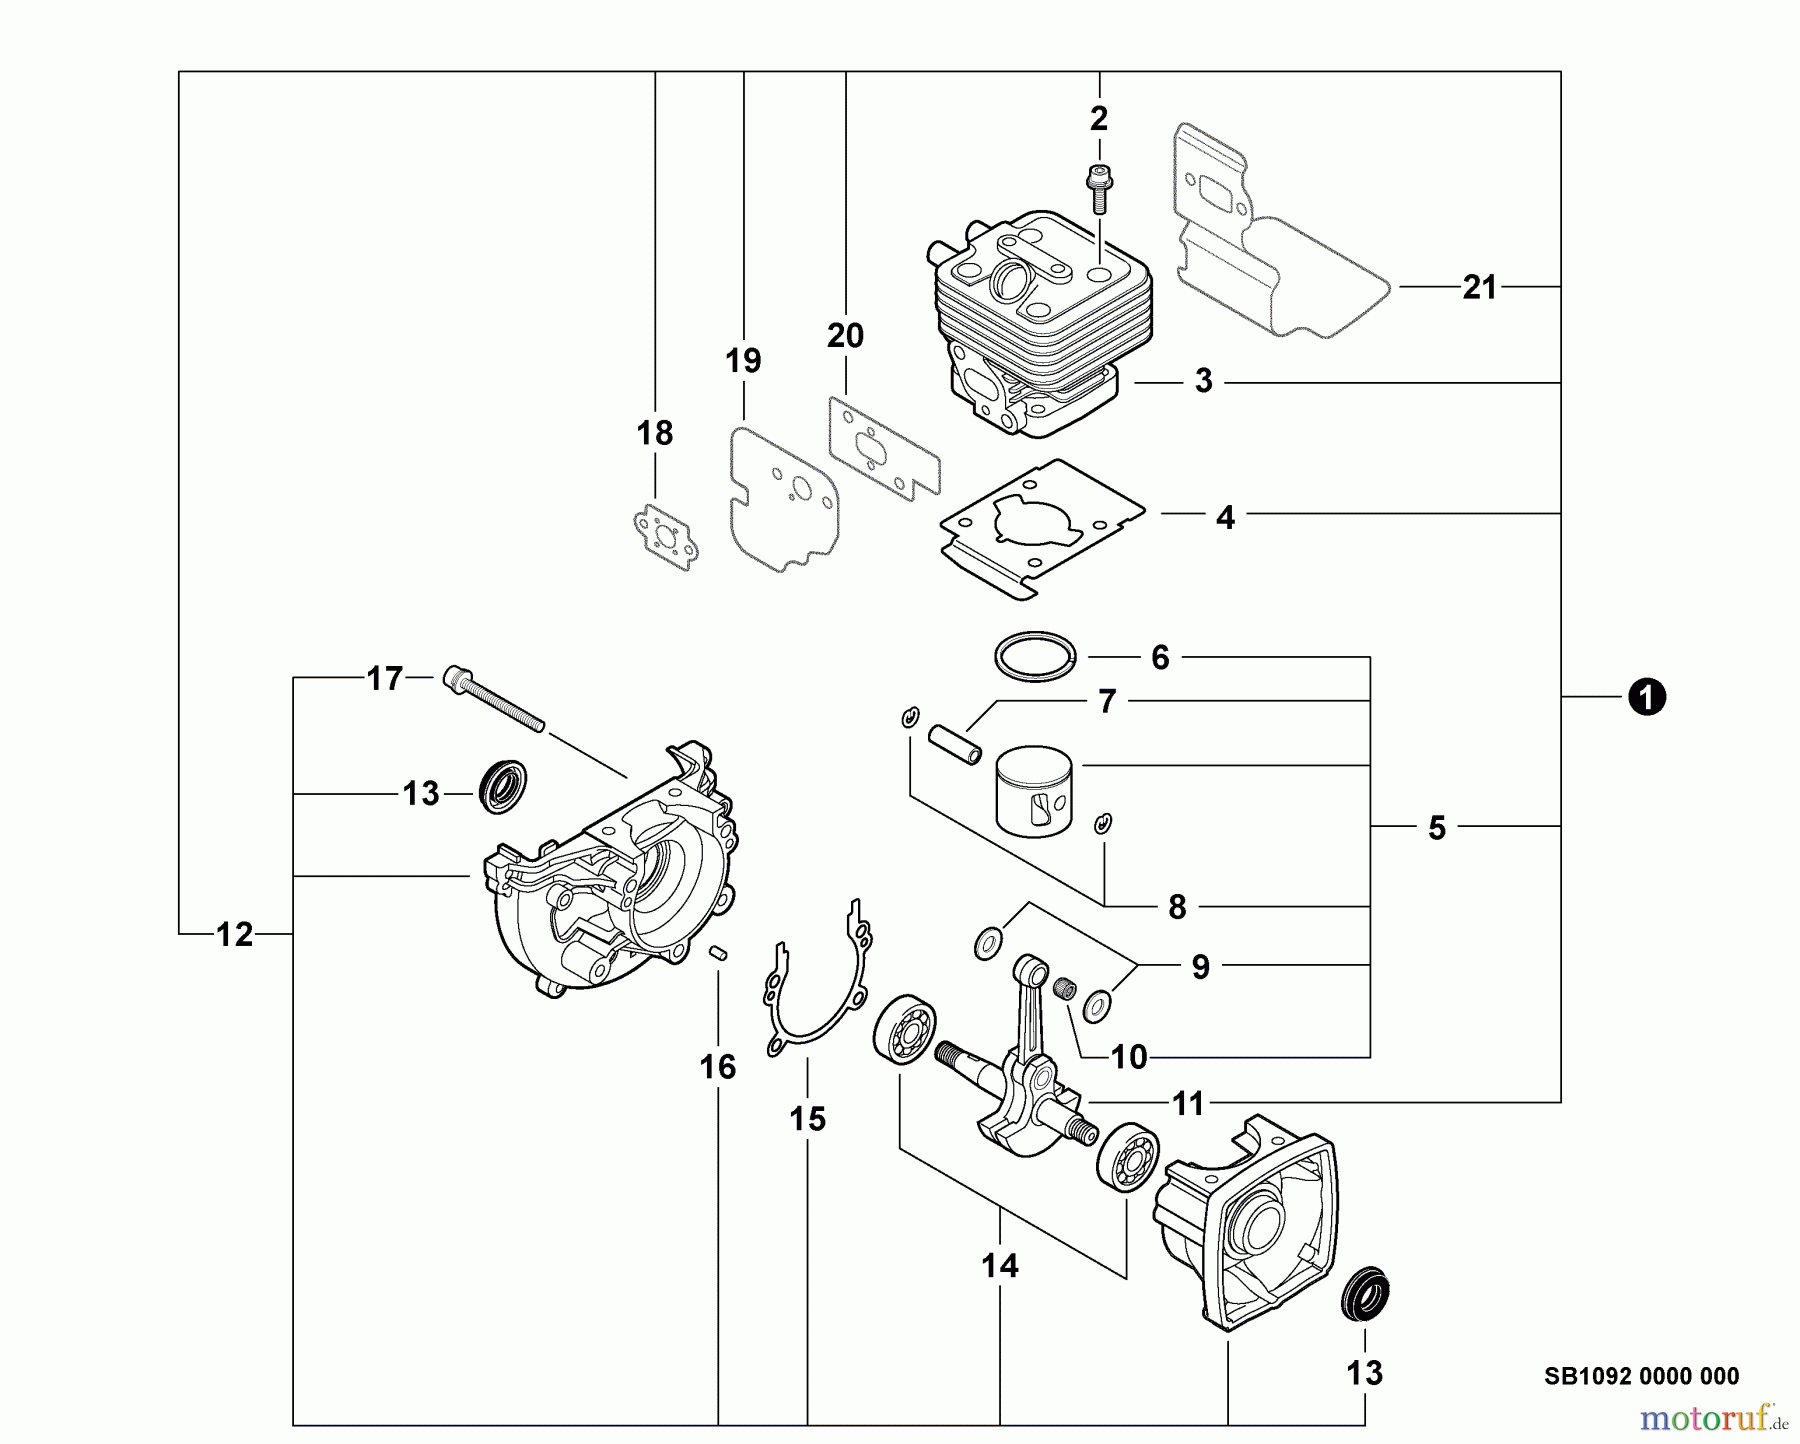  Echo Bläser / Sauger / Häcksler / Mulchgeräte	 ES-255 - Echo Shredder/Vacuum, S/N: P18812001001 - P18812999999 Engine, Short Block -- SB1092